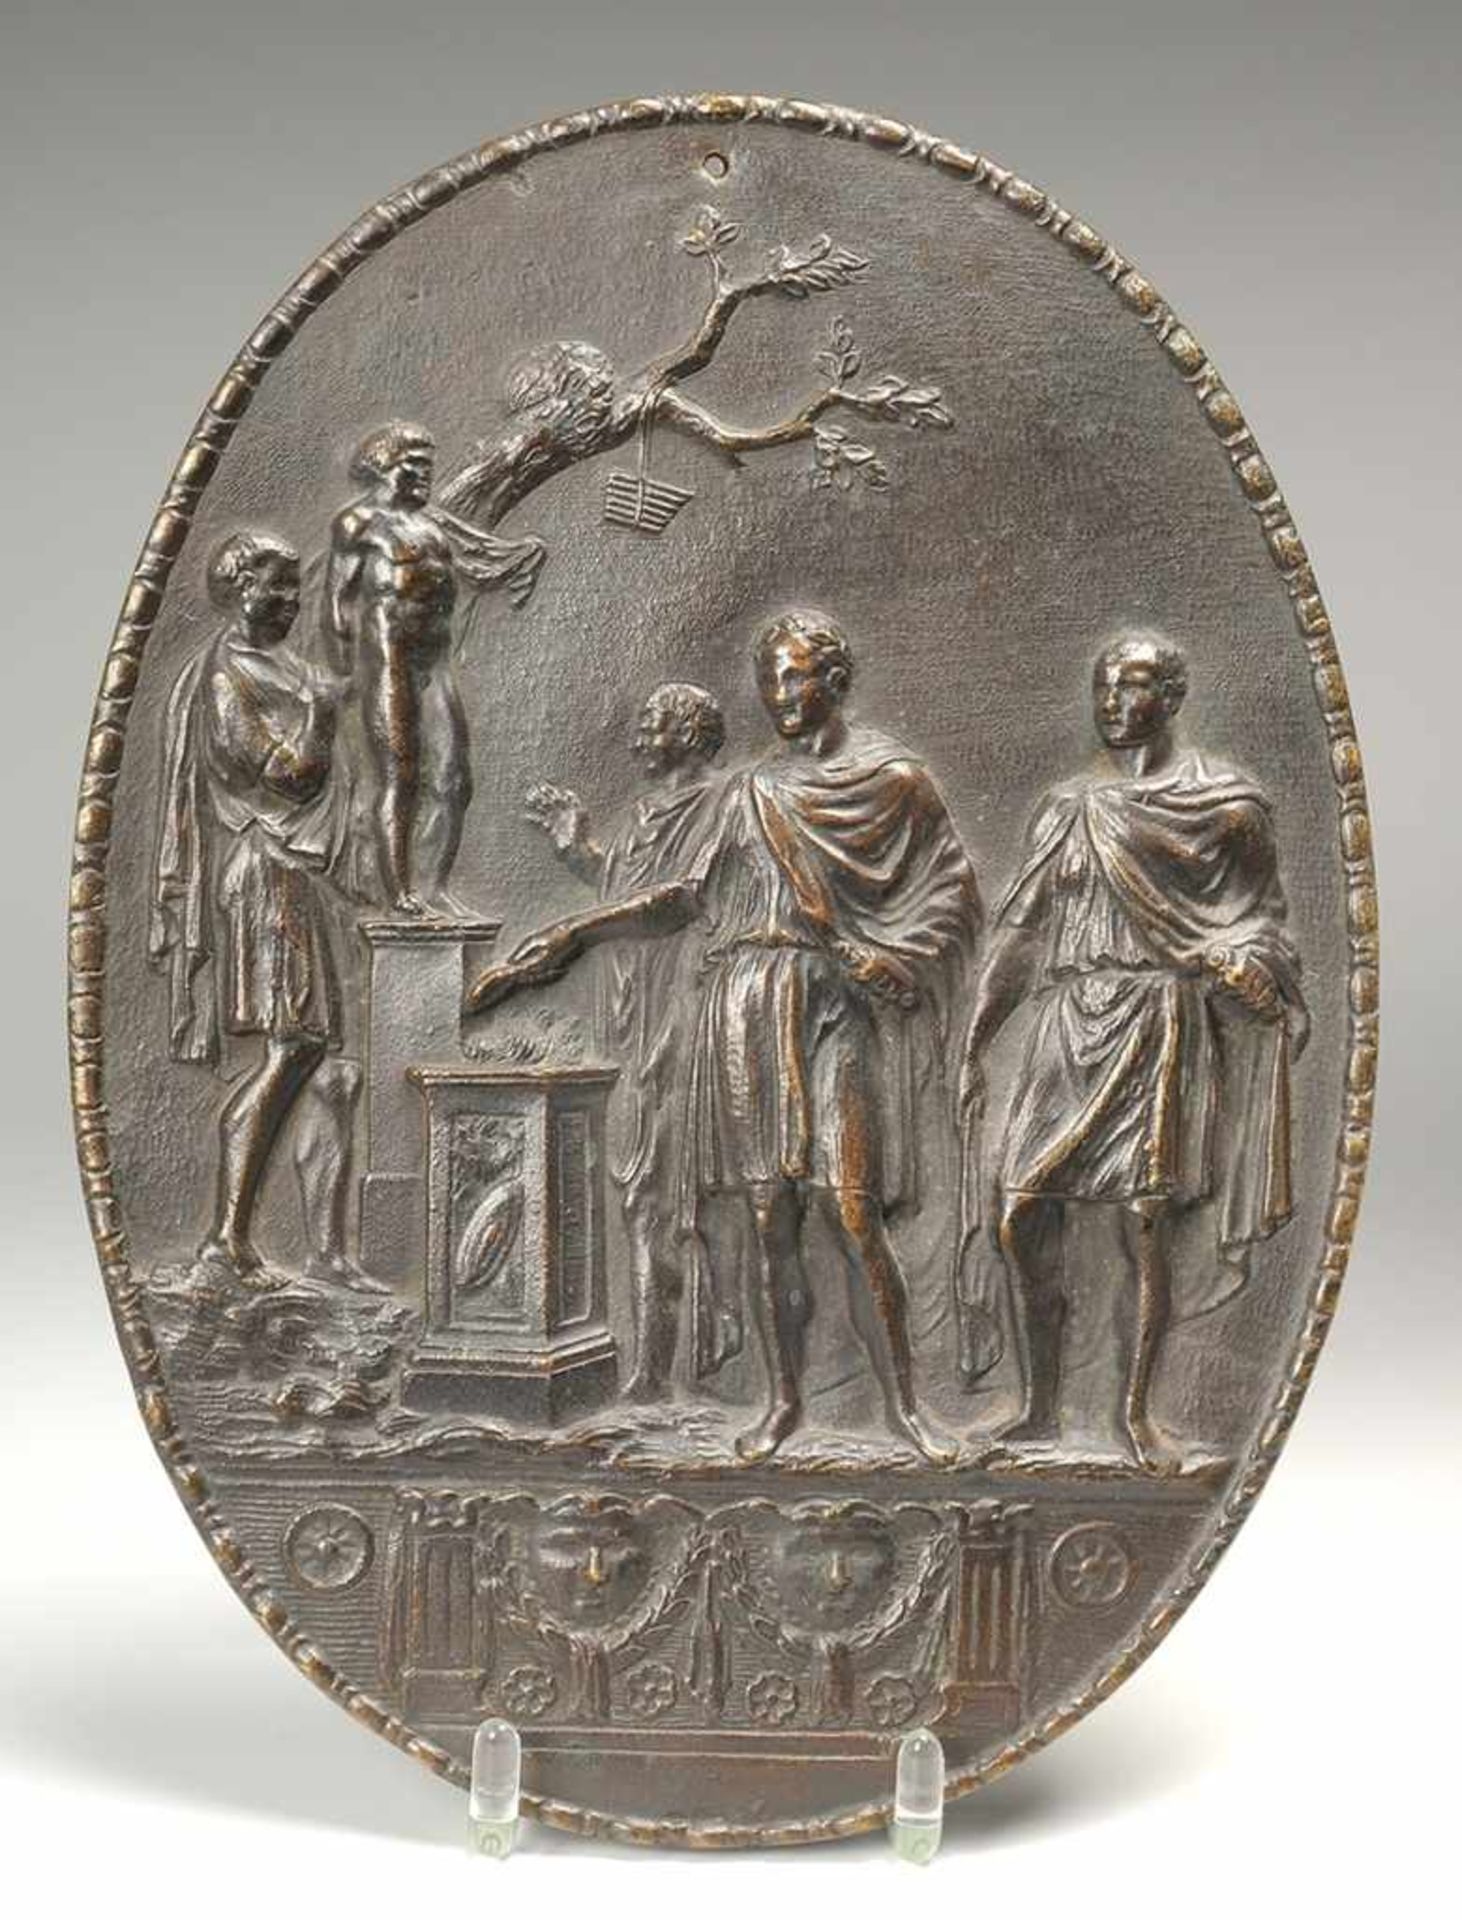 Unbekannt (Italienischer o. französischer Künstler, 2. H. 18. Jh.) Bronze, patiniert. Ovales